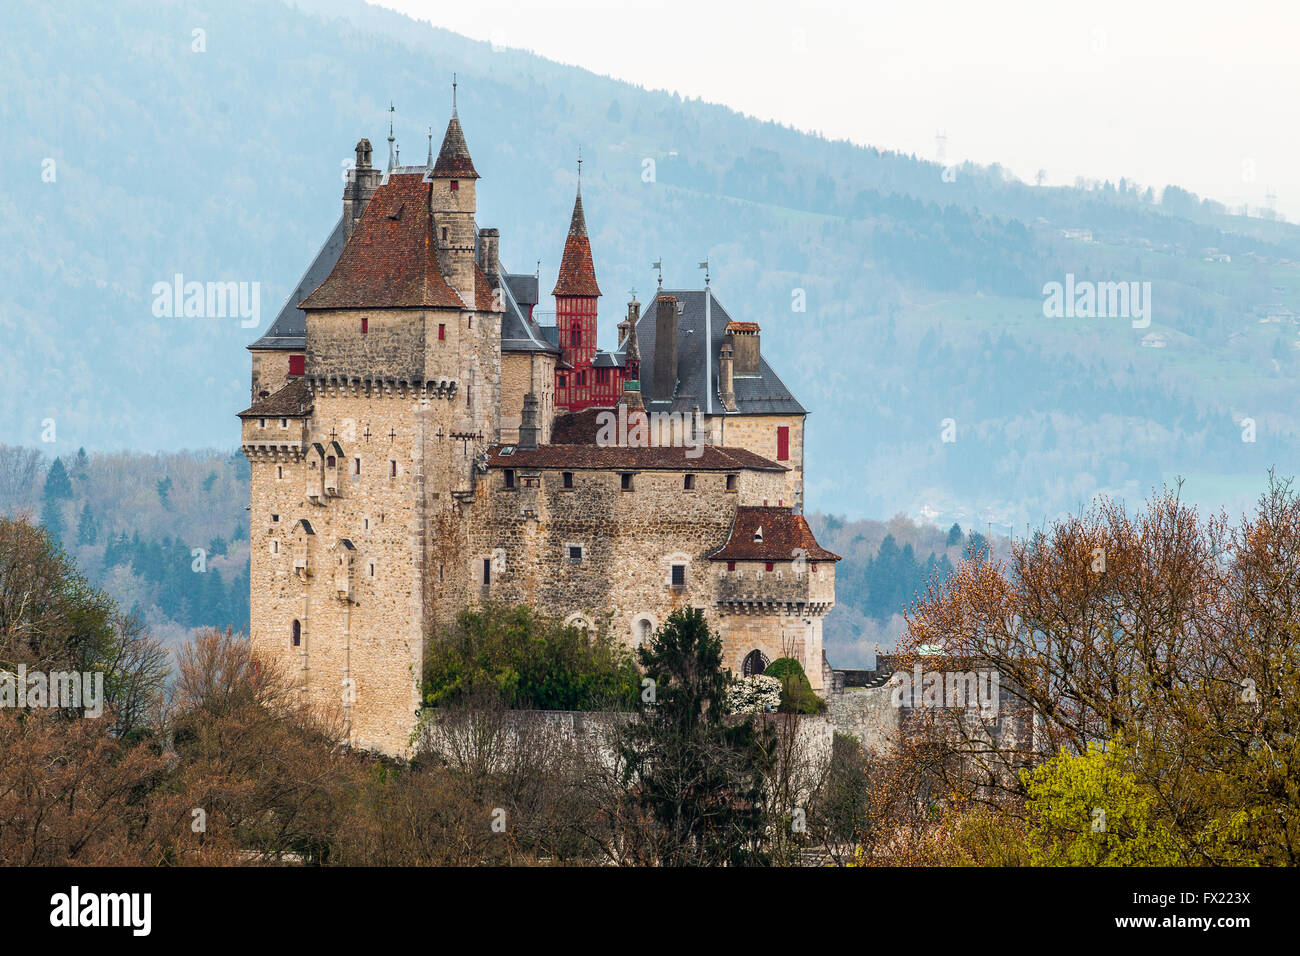 Le magnifique château médiéval ' Chateau de Menthon Saint Bernard ' .par le lac d'Annecy dans la. Haute Savoie Rhone Alpes en France Banque D'Images